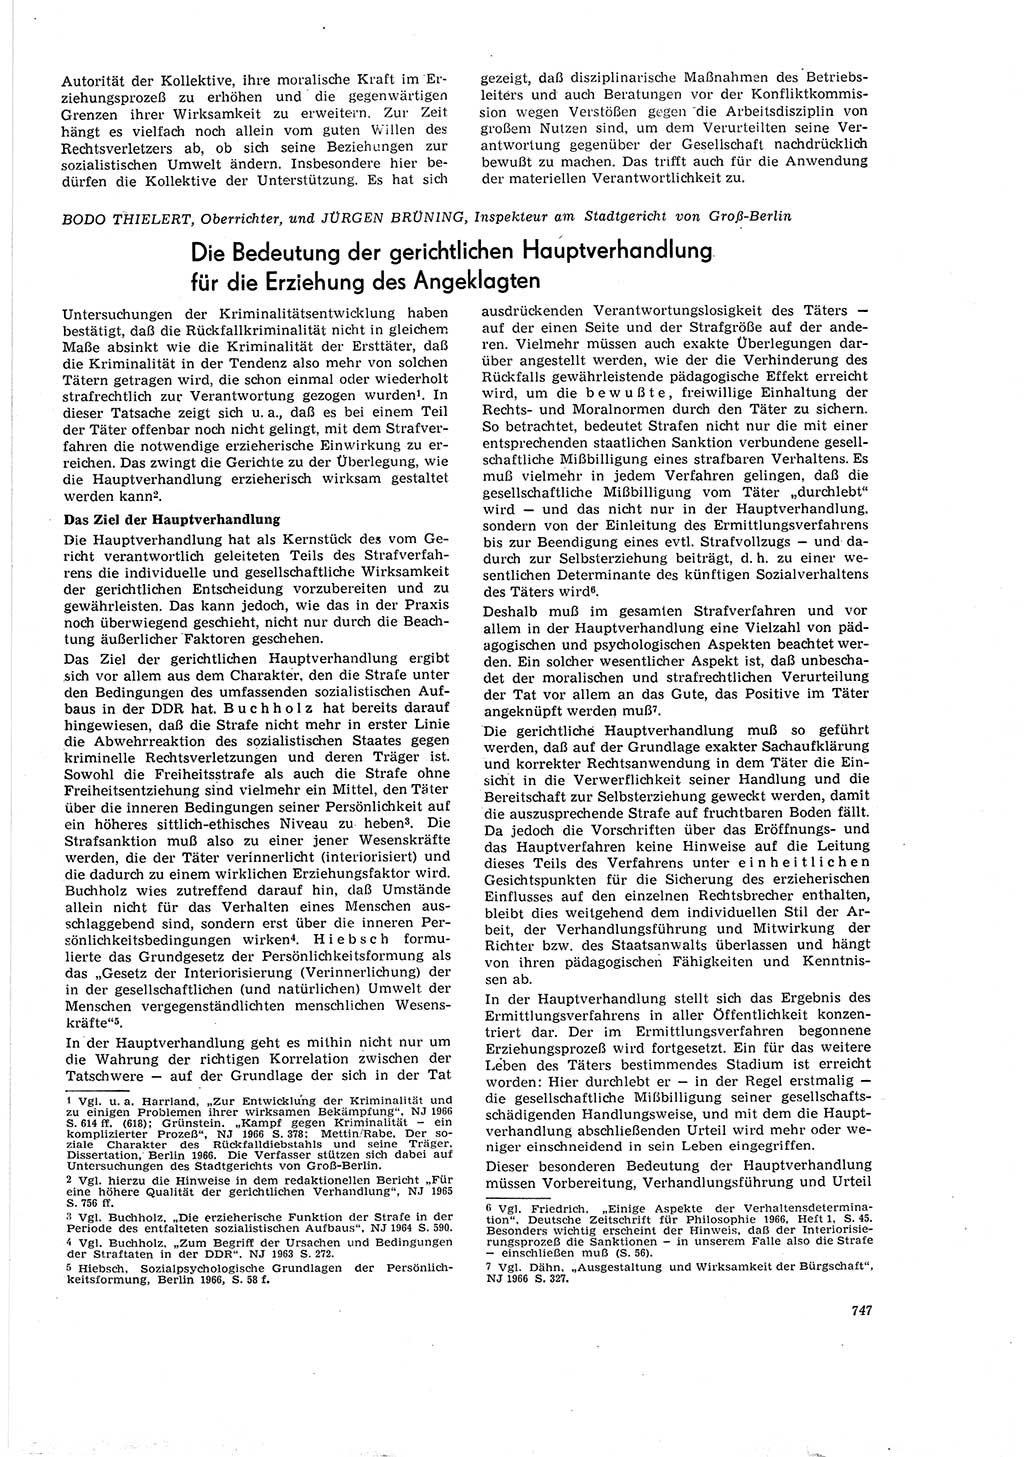 Neue Justiz (NJ), Zeitschrift für Recht und Rechtswissenschaft [Deutsche Demokratische Republik (DDR)], 20. Jahrgang 1966, Seite 747 (NJ DDR 1966, S. 747)